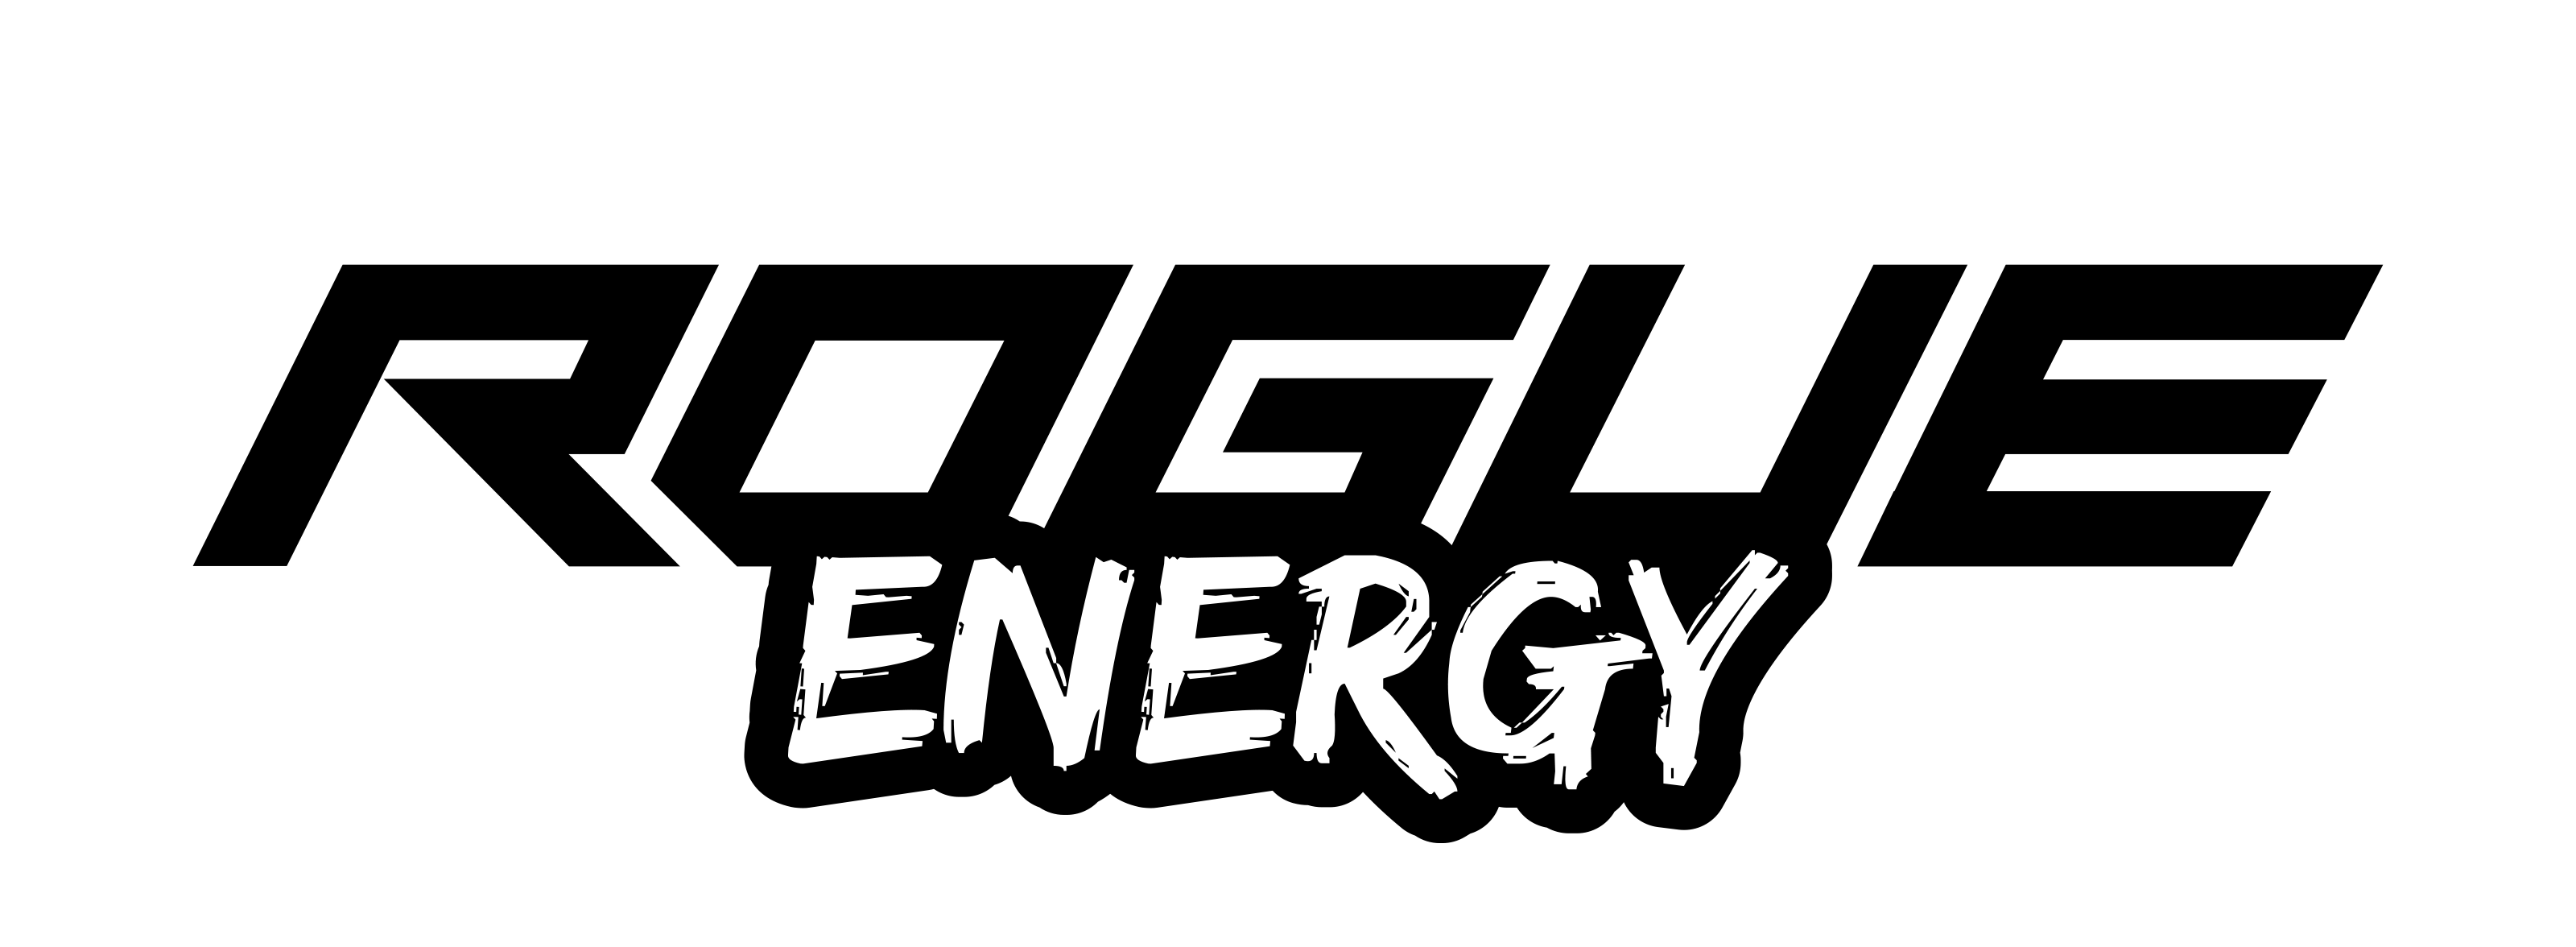 Ng Energy Logo - Brazil Network